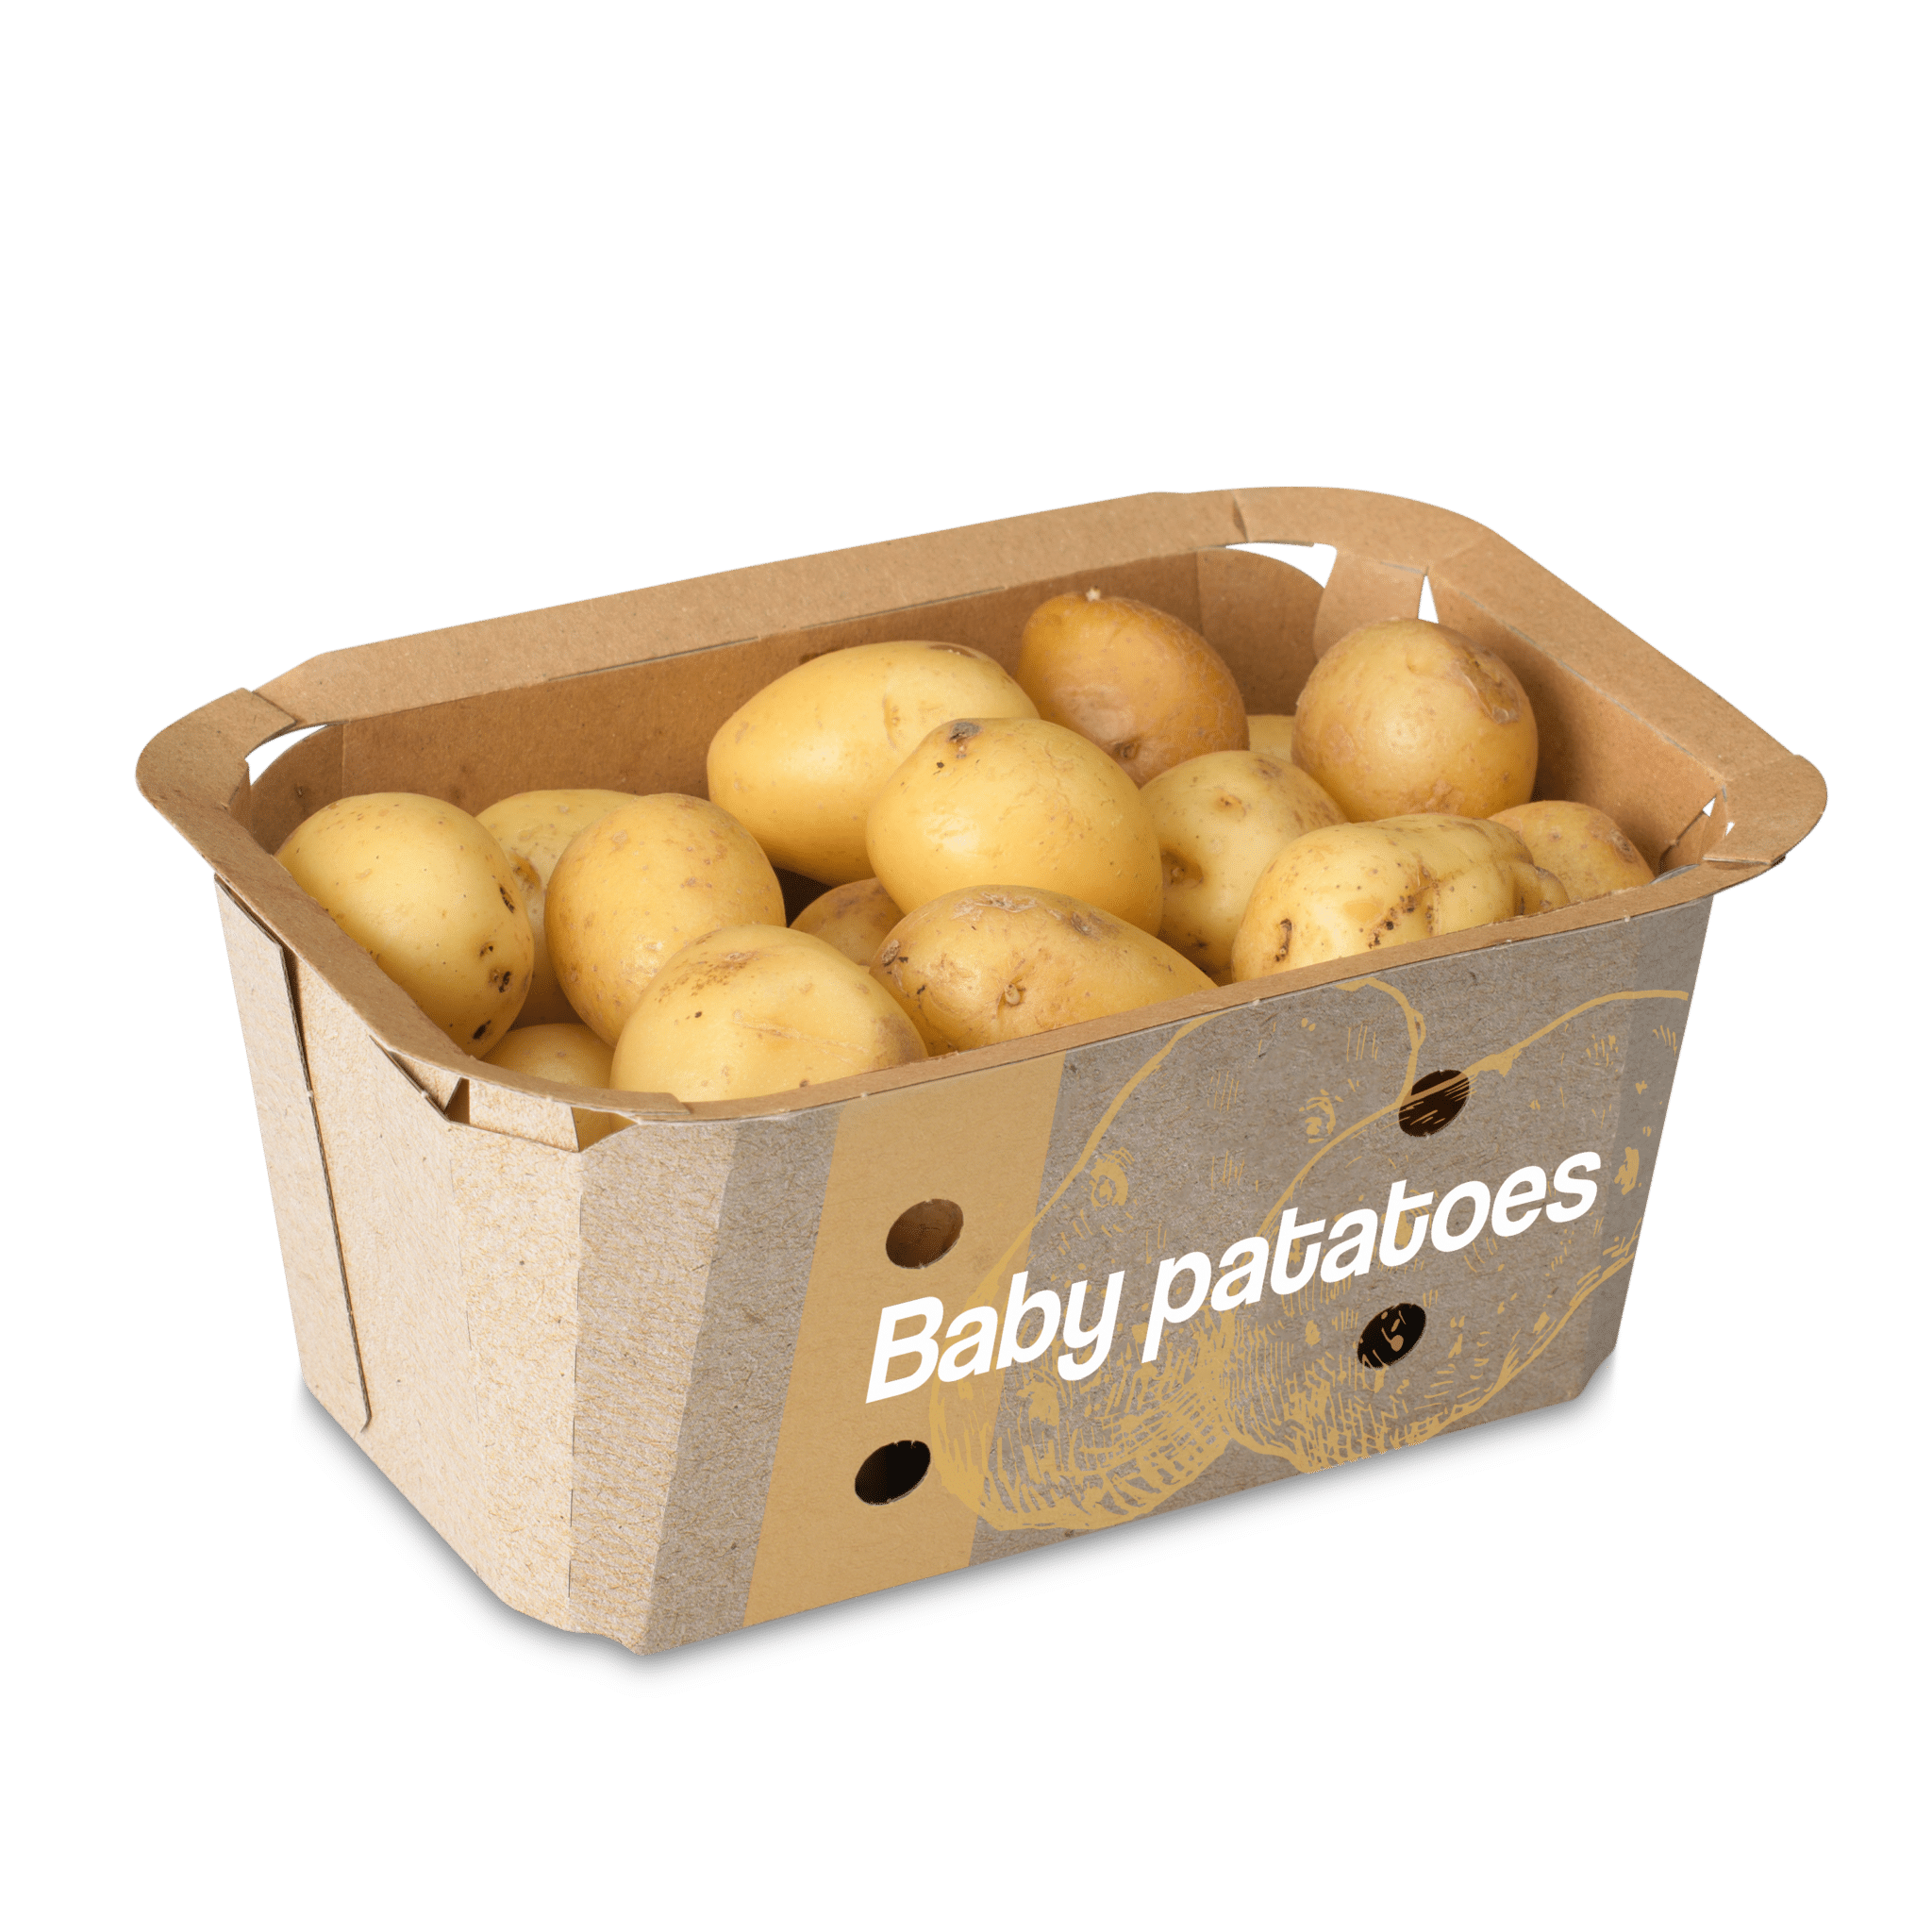 VDH Packaging Concept - Kartonnen verpakking voor Aardappelen / Baby potatoes